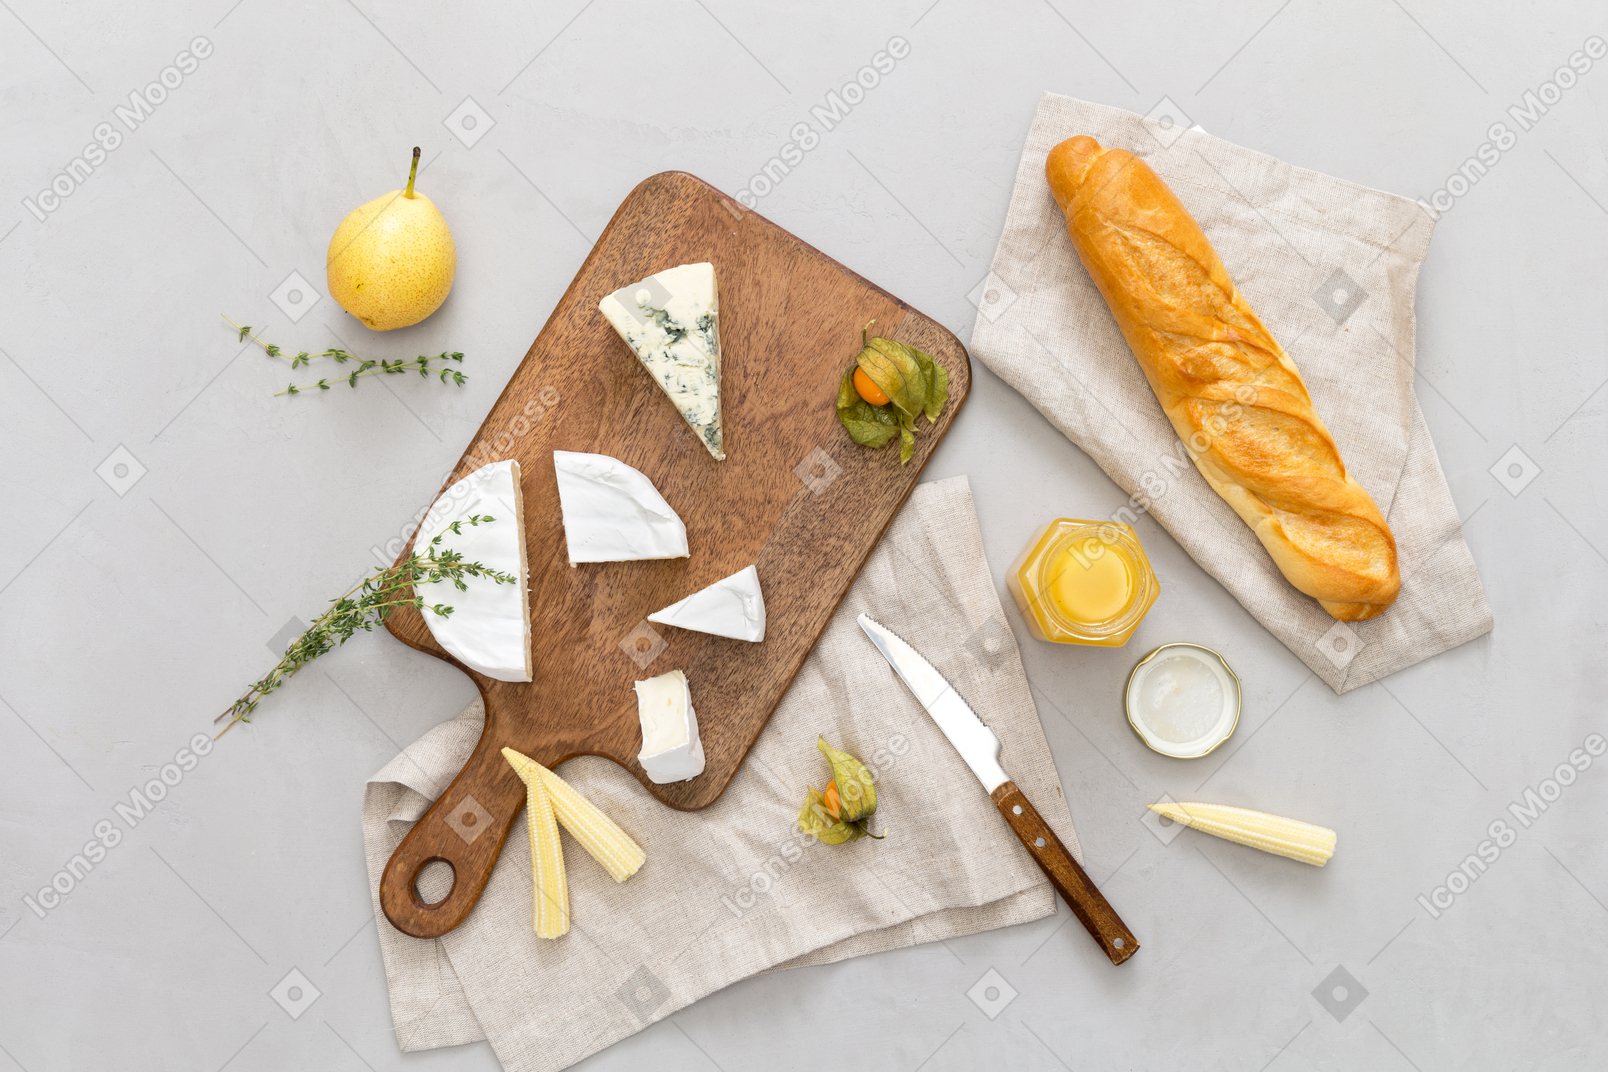 Tabla de cortar con algo de baguette y queso, algunas peras y miel.